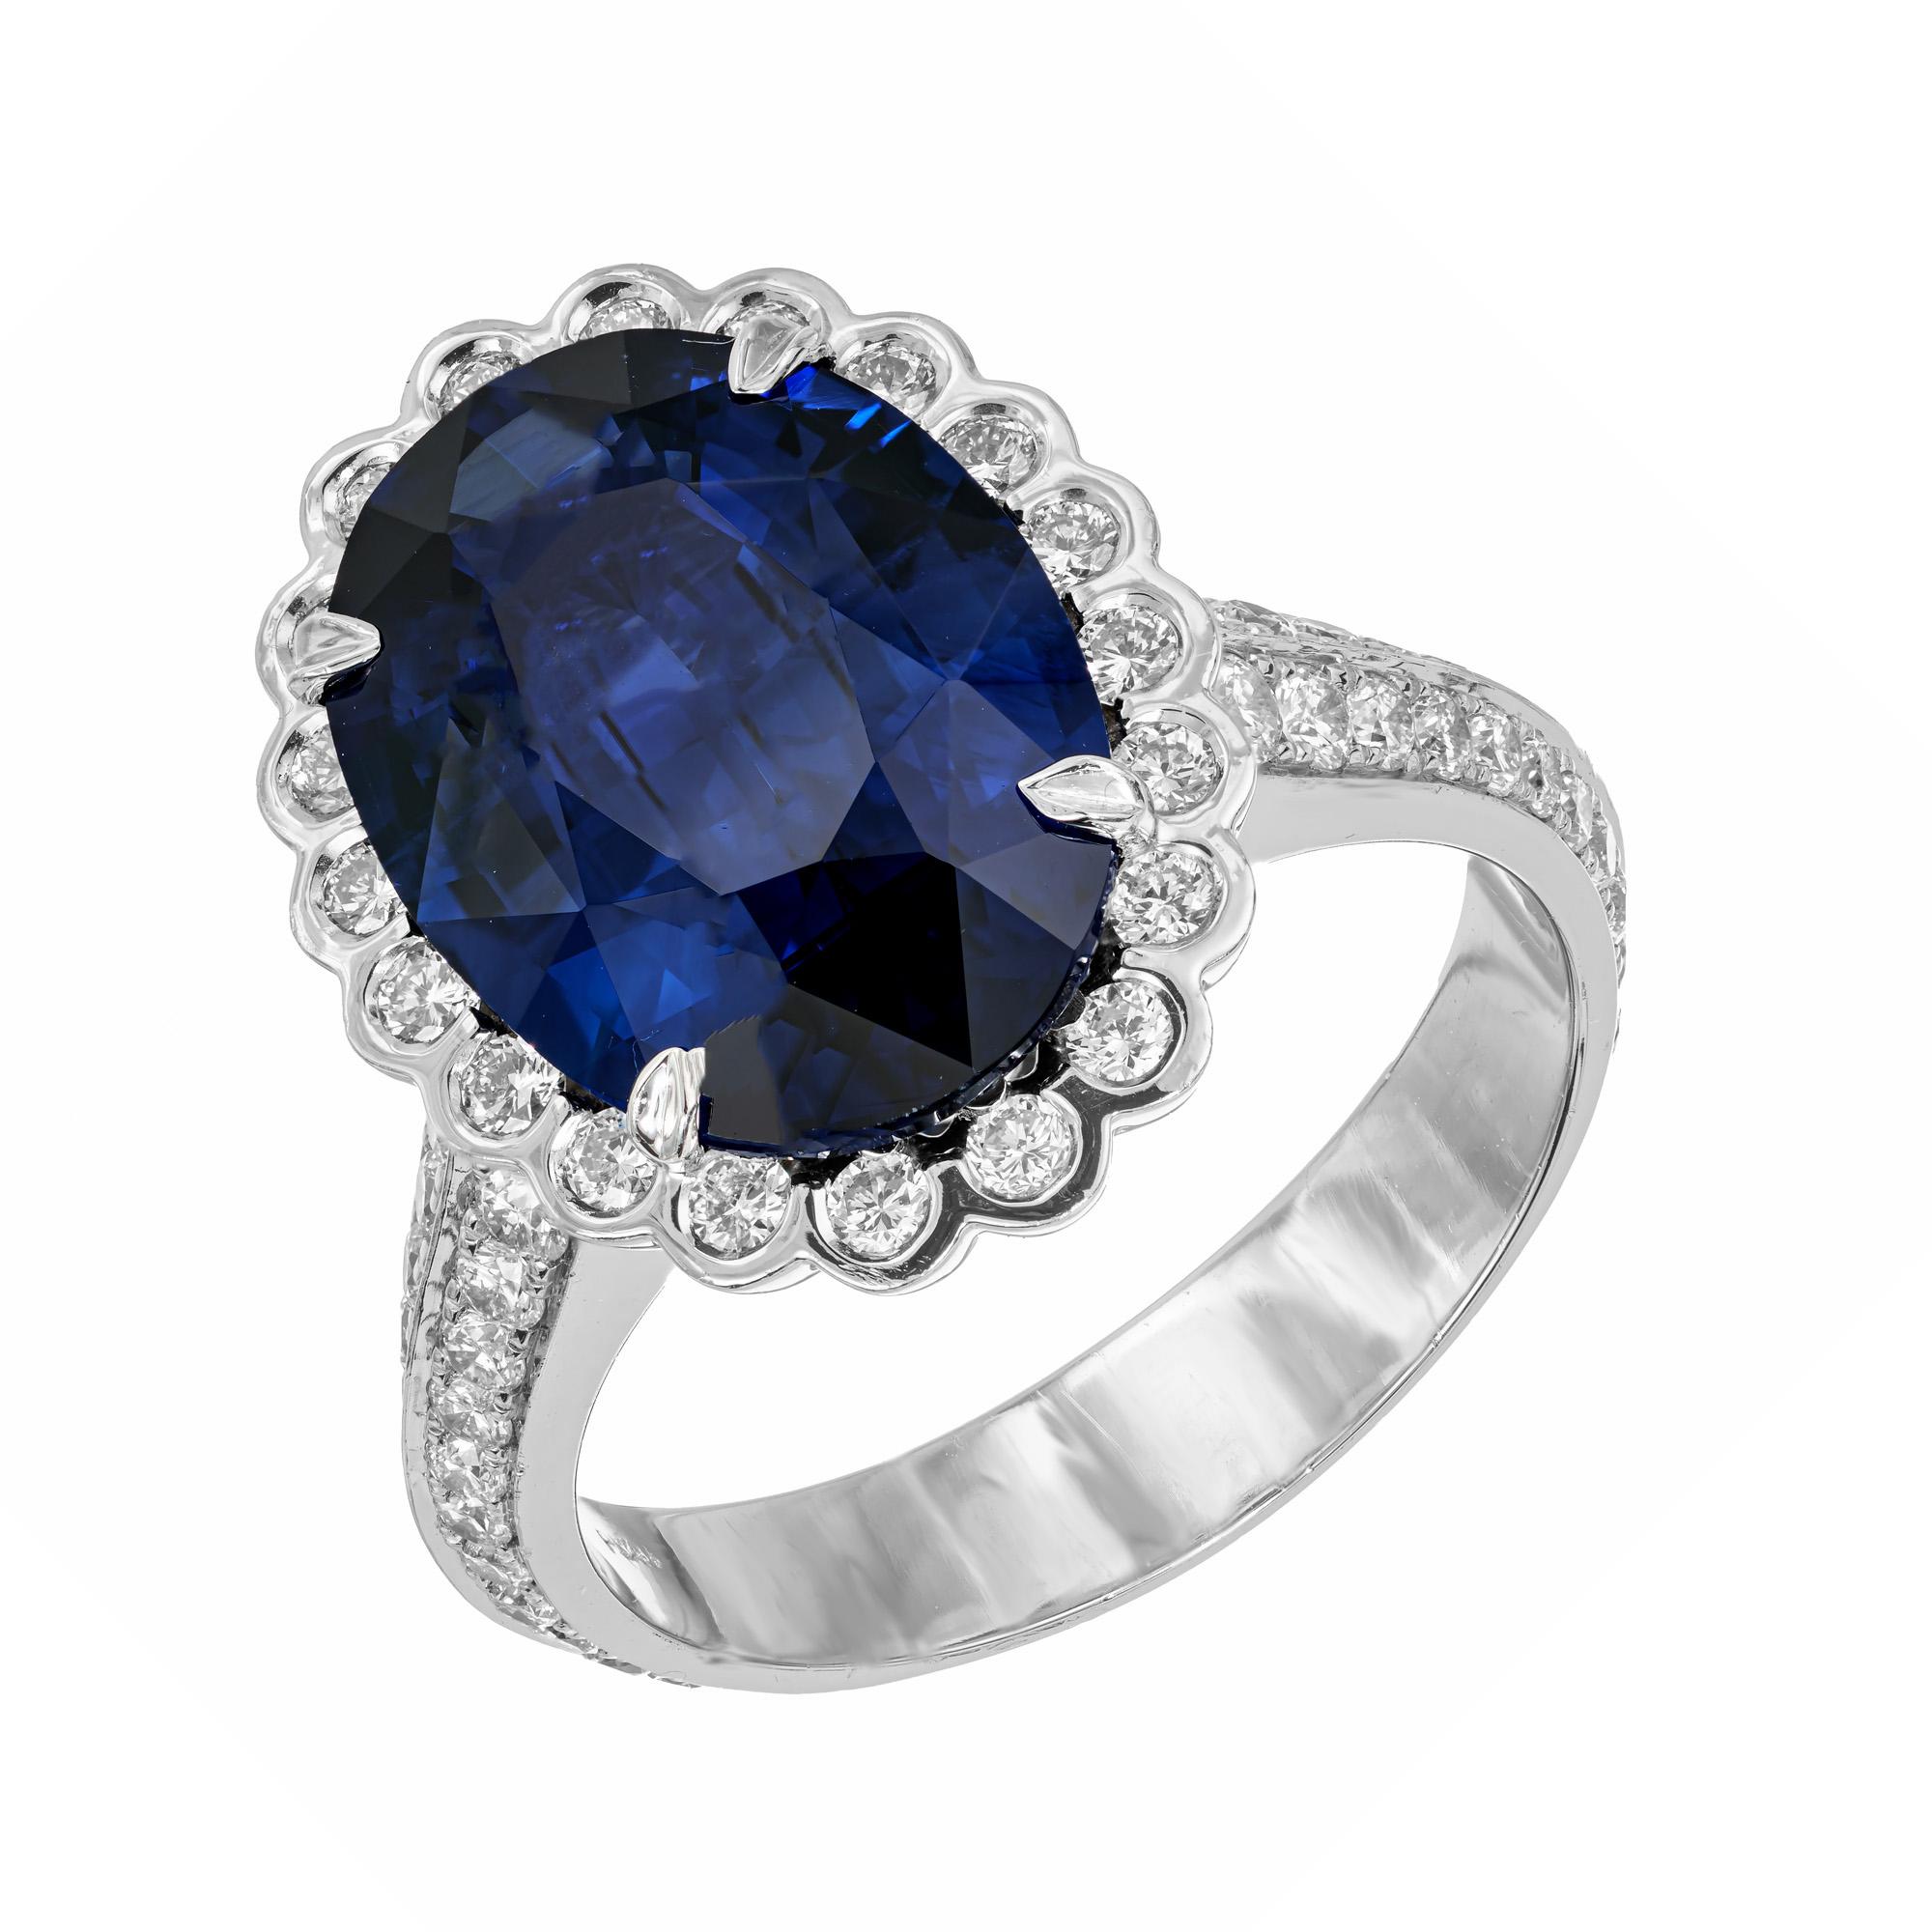 Verlobungsring mit Saphir und Diamant im Halo. GIA-zertifizierter ovaler, tiefblauer Mittelsaphir mit großer Oberfläche, gefasst in einer Platinfassung mit einem Halo aus runden, in die Lünette gefassten Diamanten, akzentuiert mit zwei Reihen von